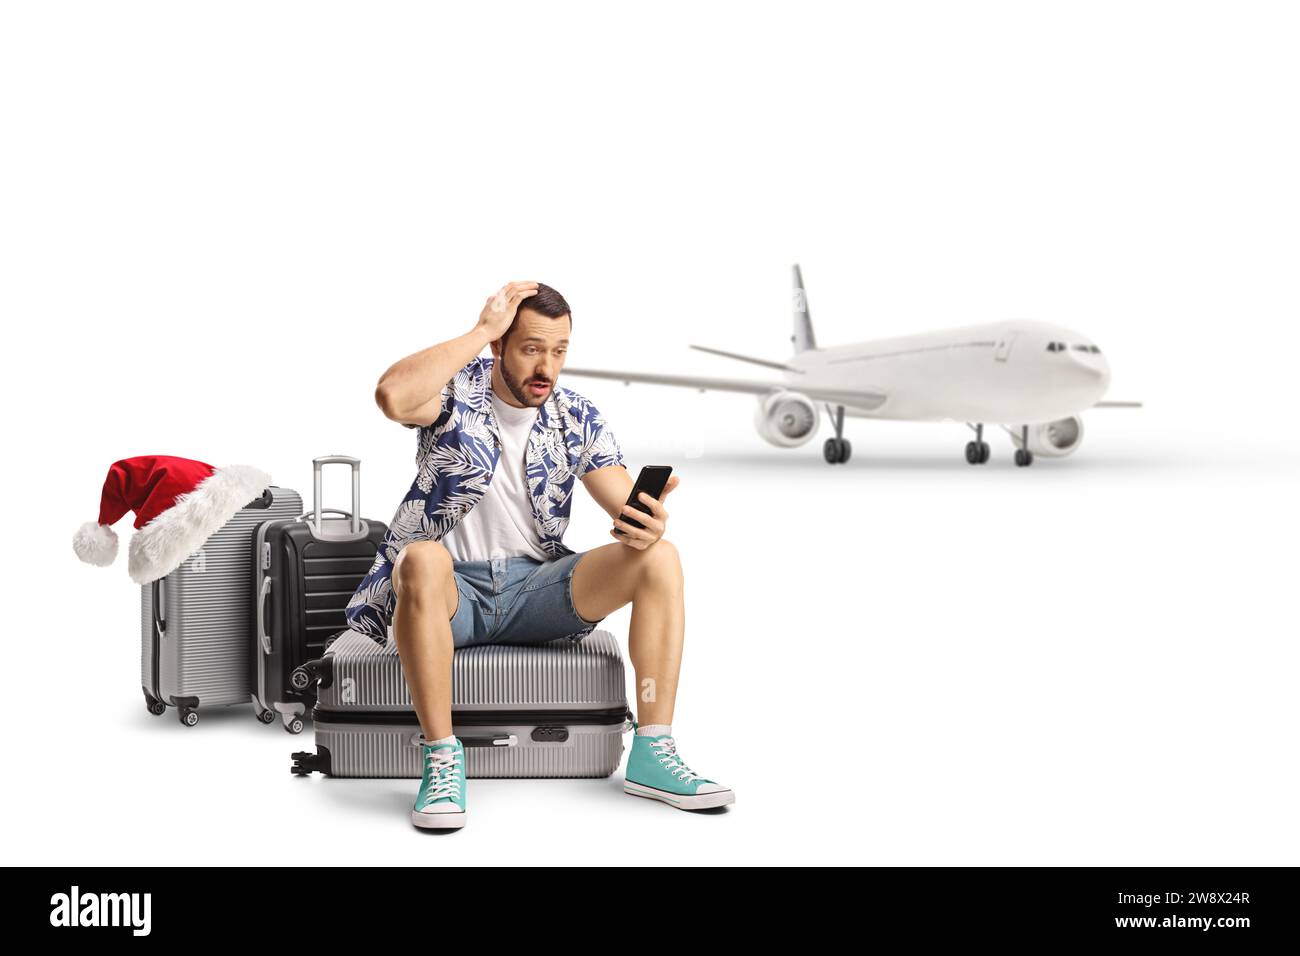 Überraschter männlicher Tourist, der auf einem Koffer sitzt und ein Smartphone vor einem Flugzeug anschaut, weihnachtszeit, isoliert auf weißem Hintergrund Stockfoto